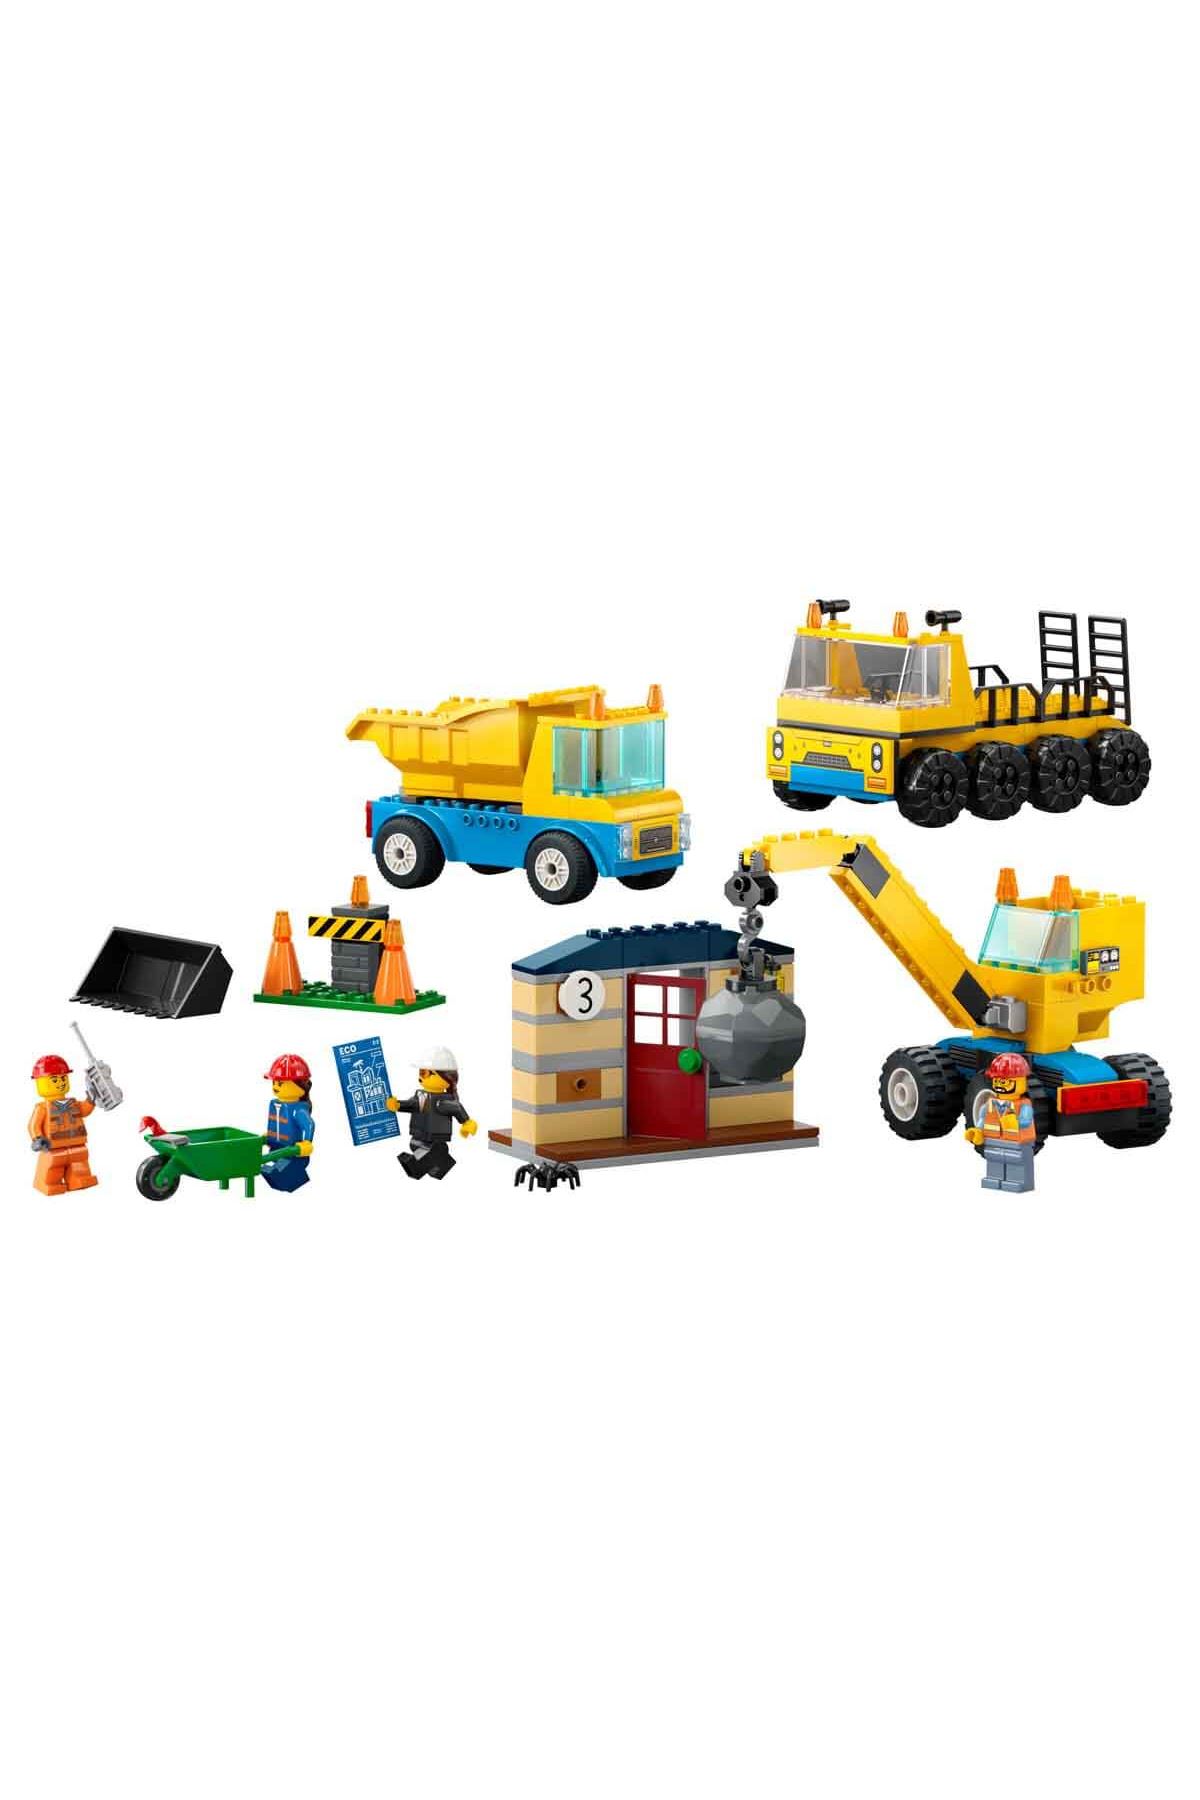 Lego City İnşaat Kamyonları ve Yıkım Gülleli Vinç 60391